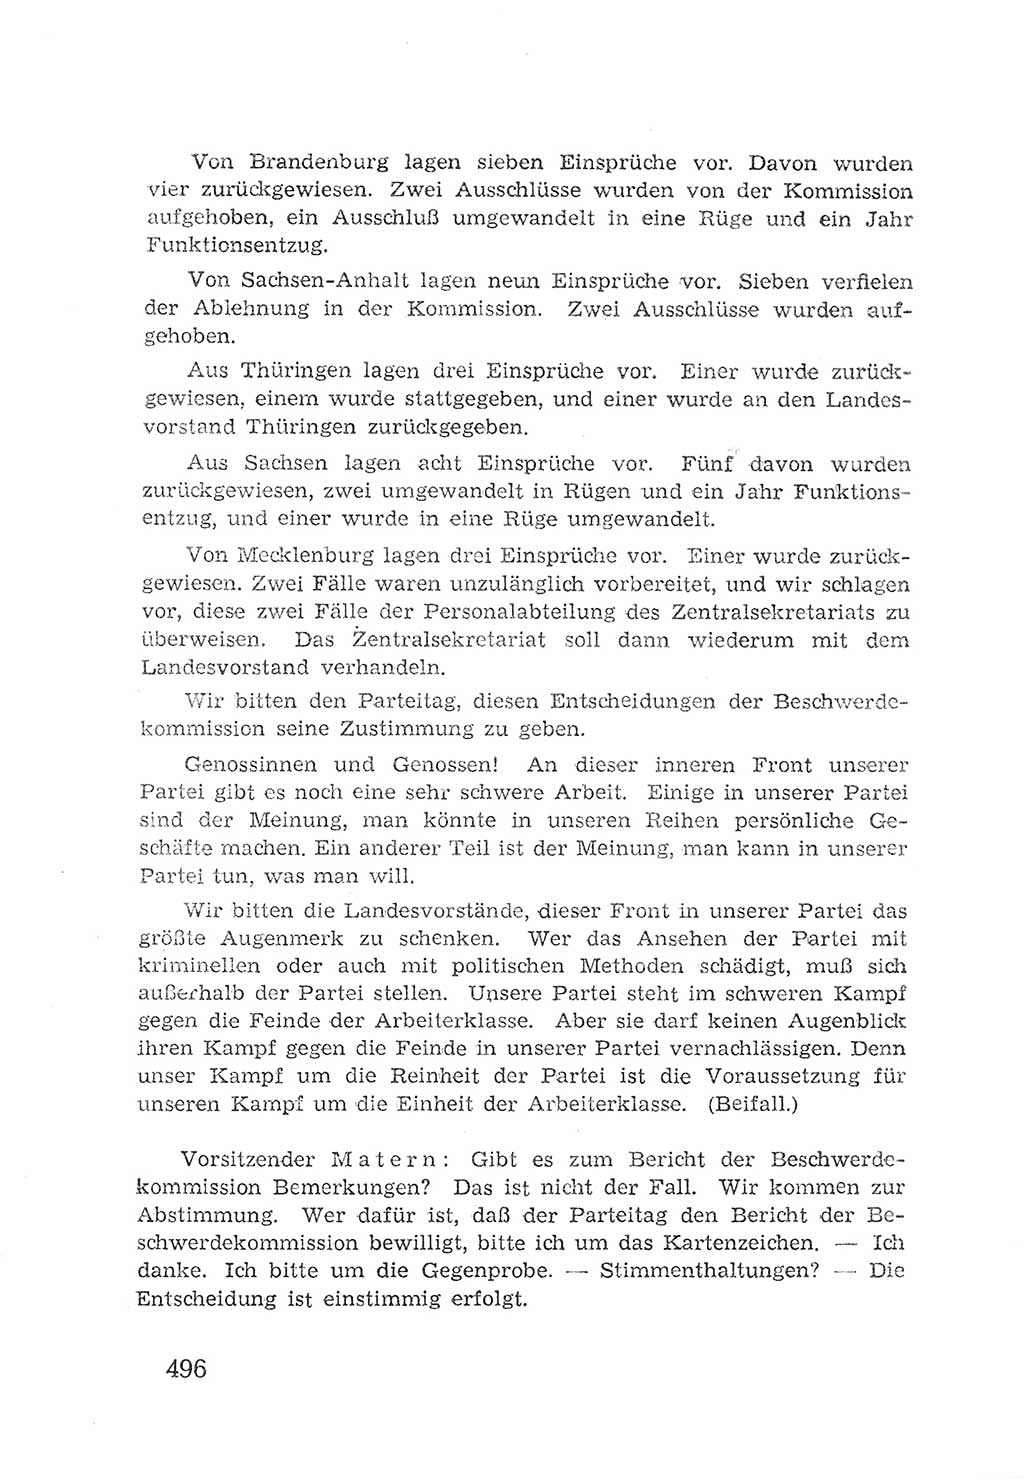 Protokoll der Verhandlungen des 2. Parteitages der Sozialistischen Einheitspartei Deutschlands (SED) [Sowjetische Besatzungszone (SBZ) Deutschlands] 1947, Seite 496 (Prot. Verh. 2. PT SED SBZ Dtl. 1947, S. 496)